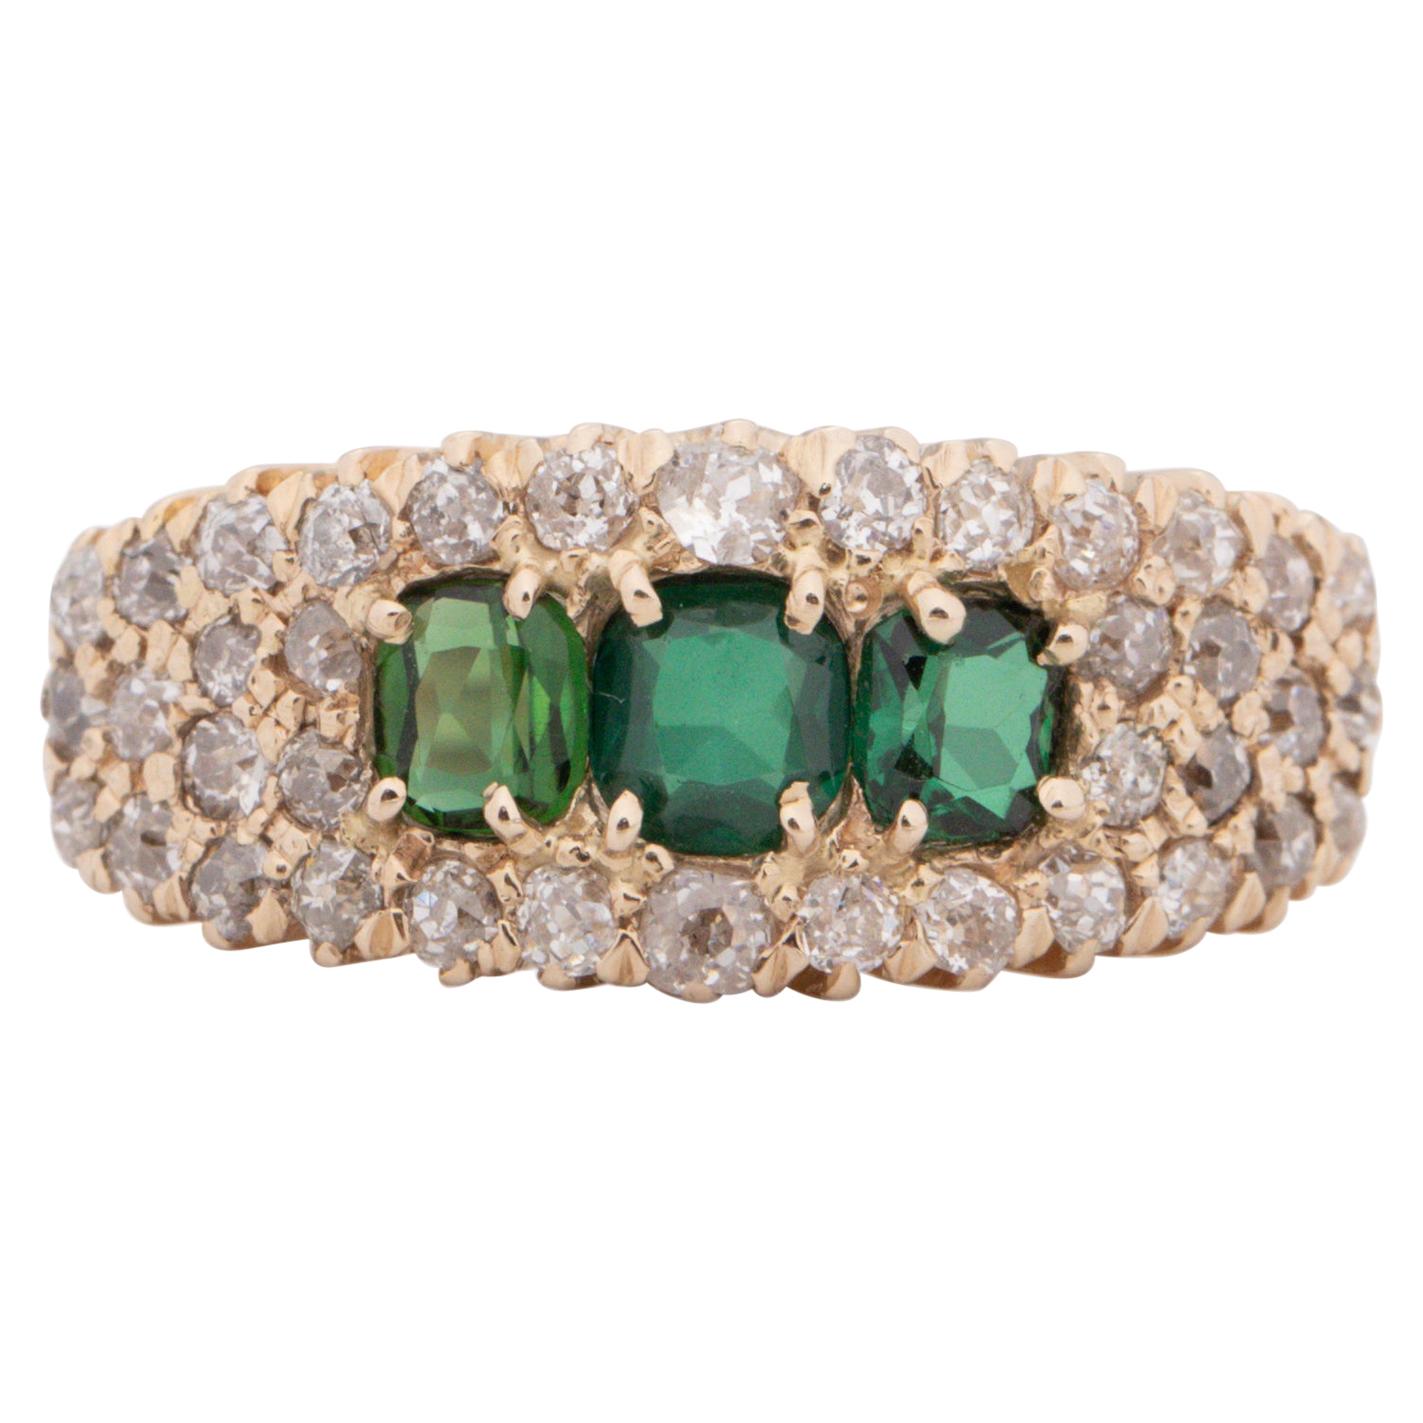 .75 Carat Total Weight Emerald Edwardian Diamond 14 Karat Yellow Engagement Ring